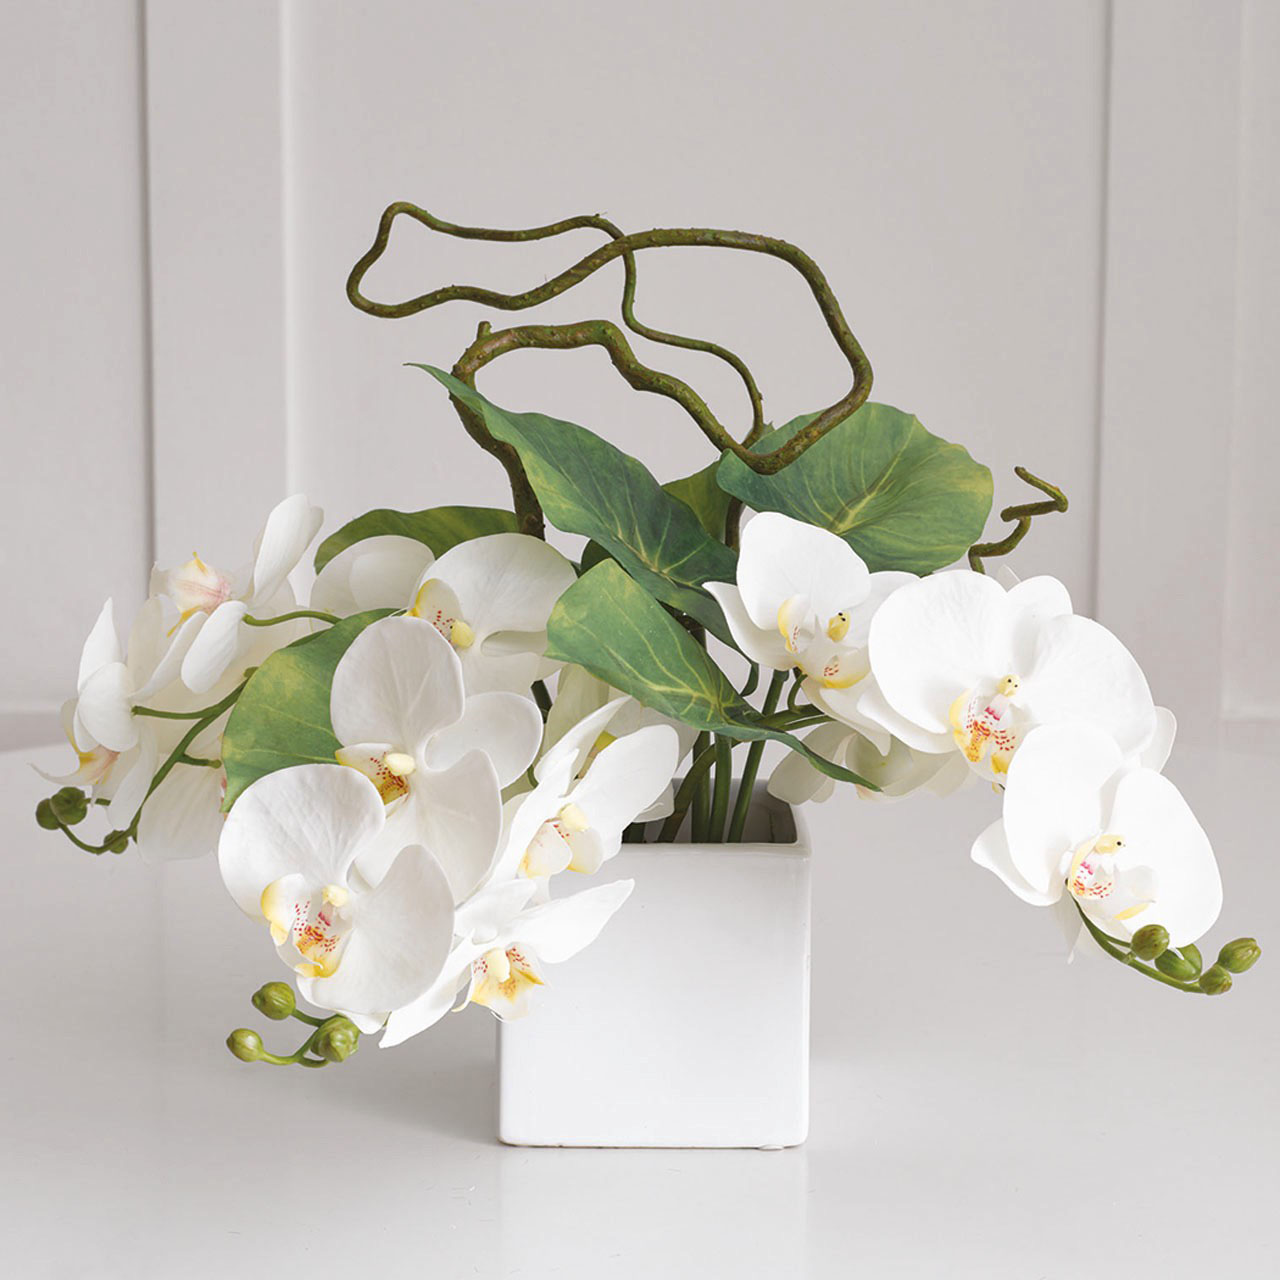 Lusong Orchid Arrangement